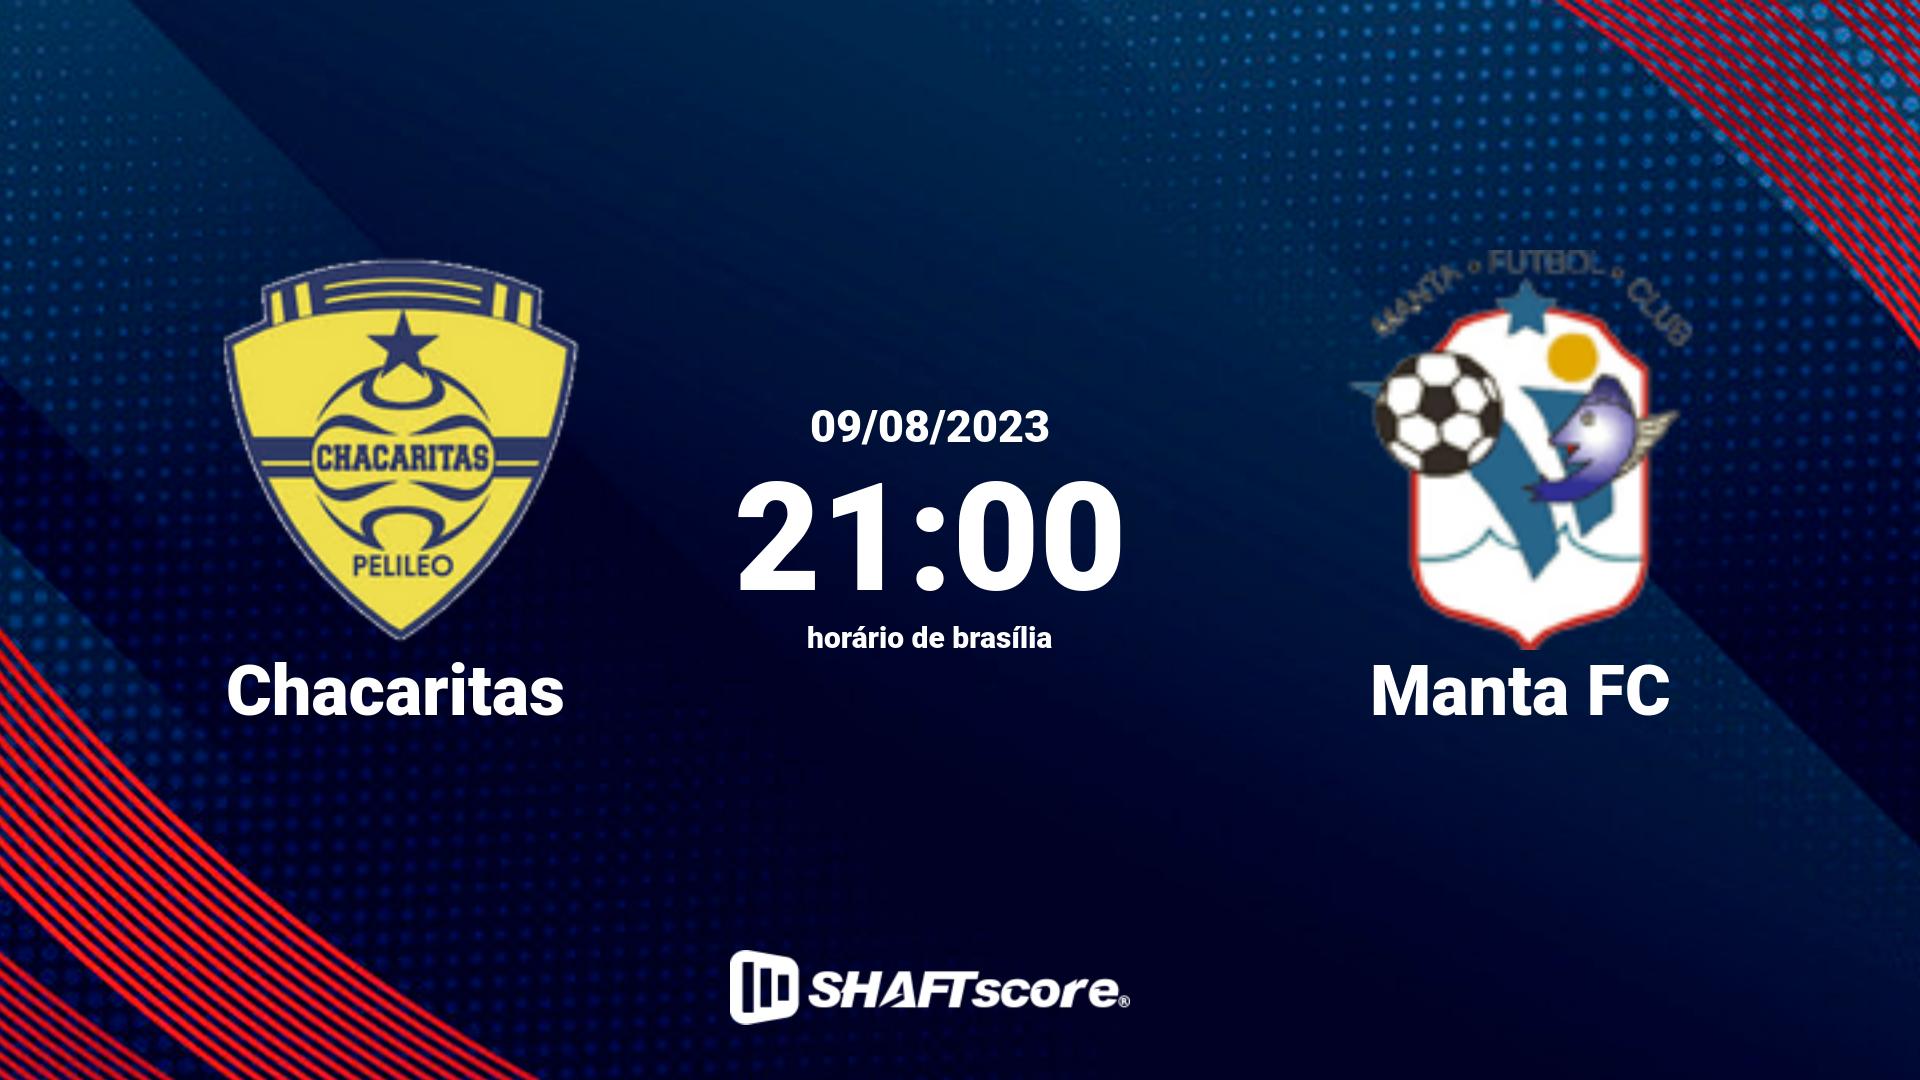 Estatísticas do jogo Chacaritas vs Manta FC 09.08 21:00